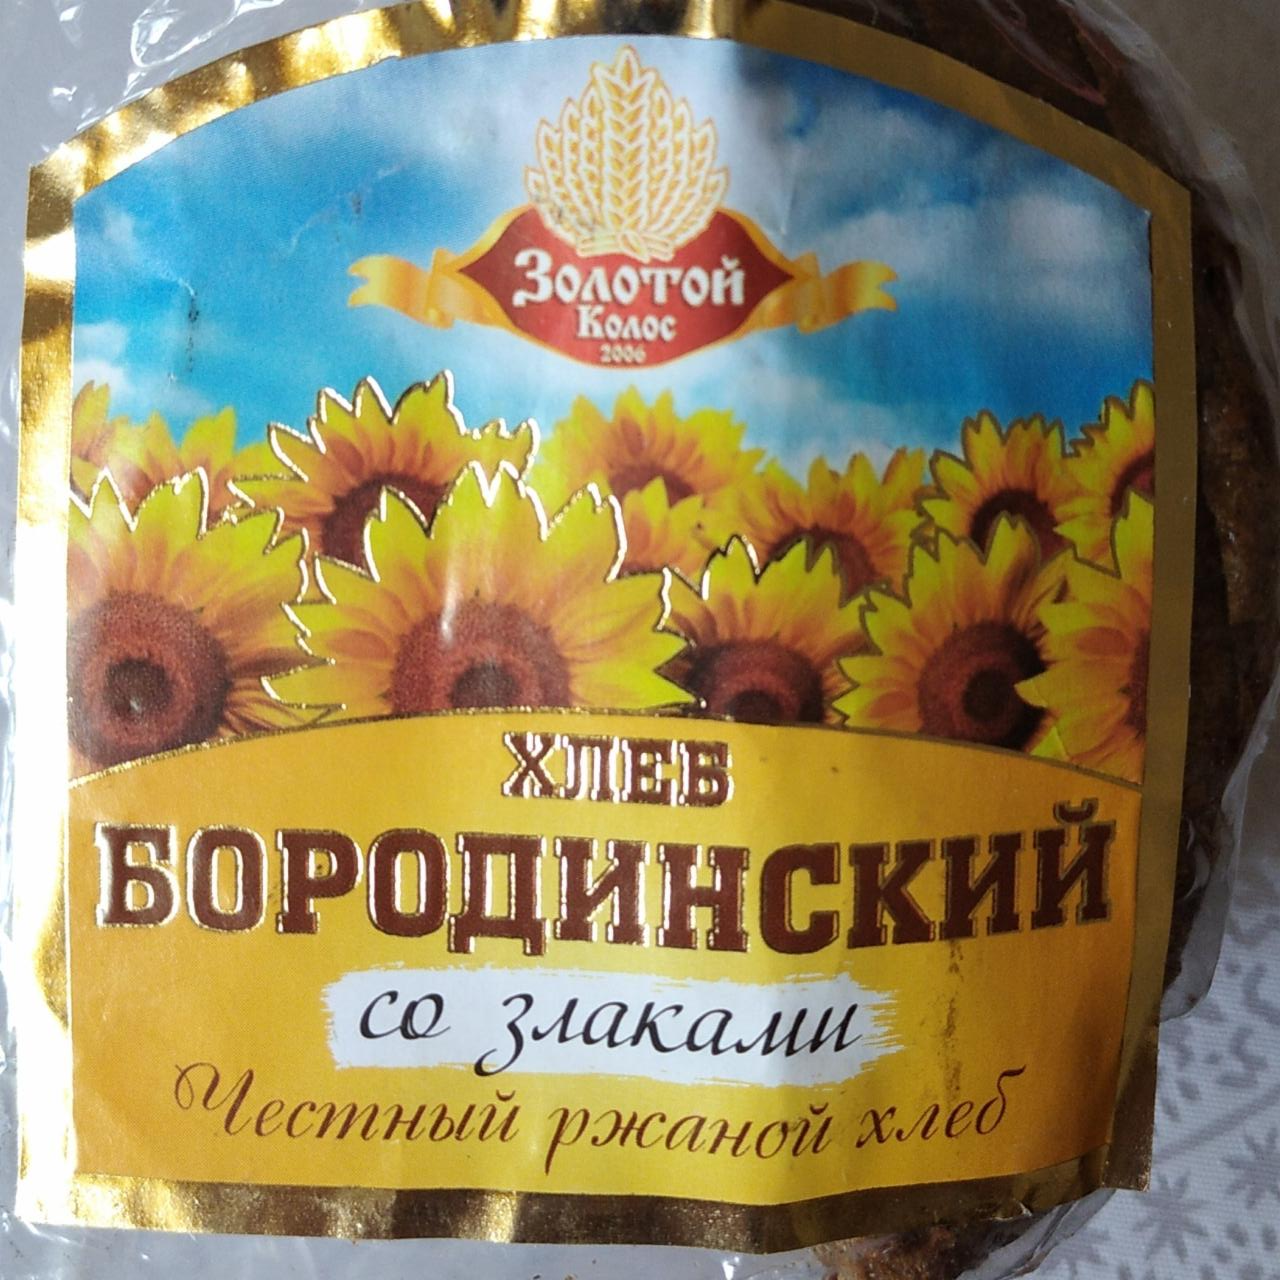 Фото - Хлеб бородинский со злаками честный ржаной хлеб